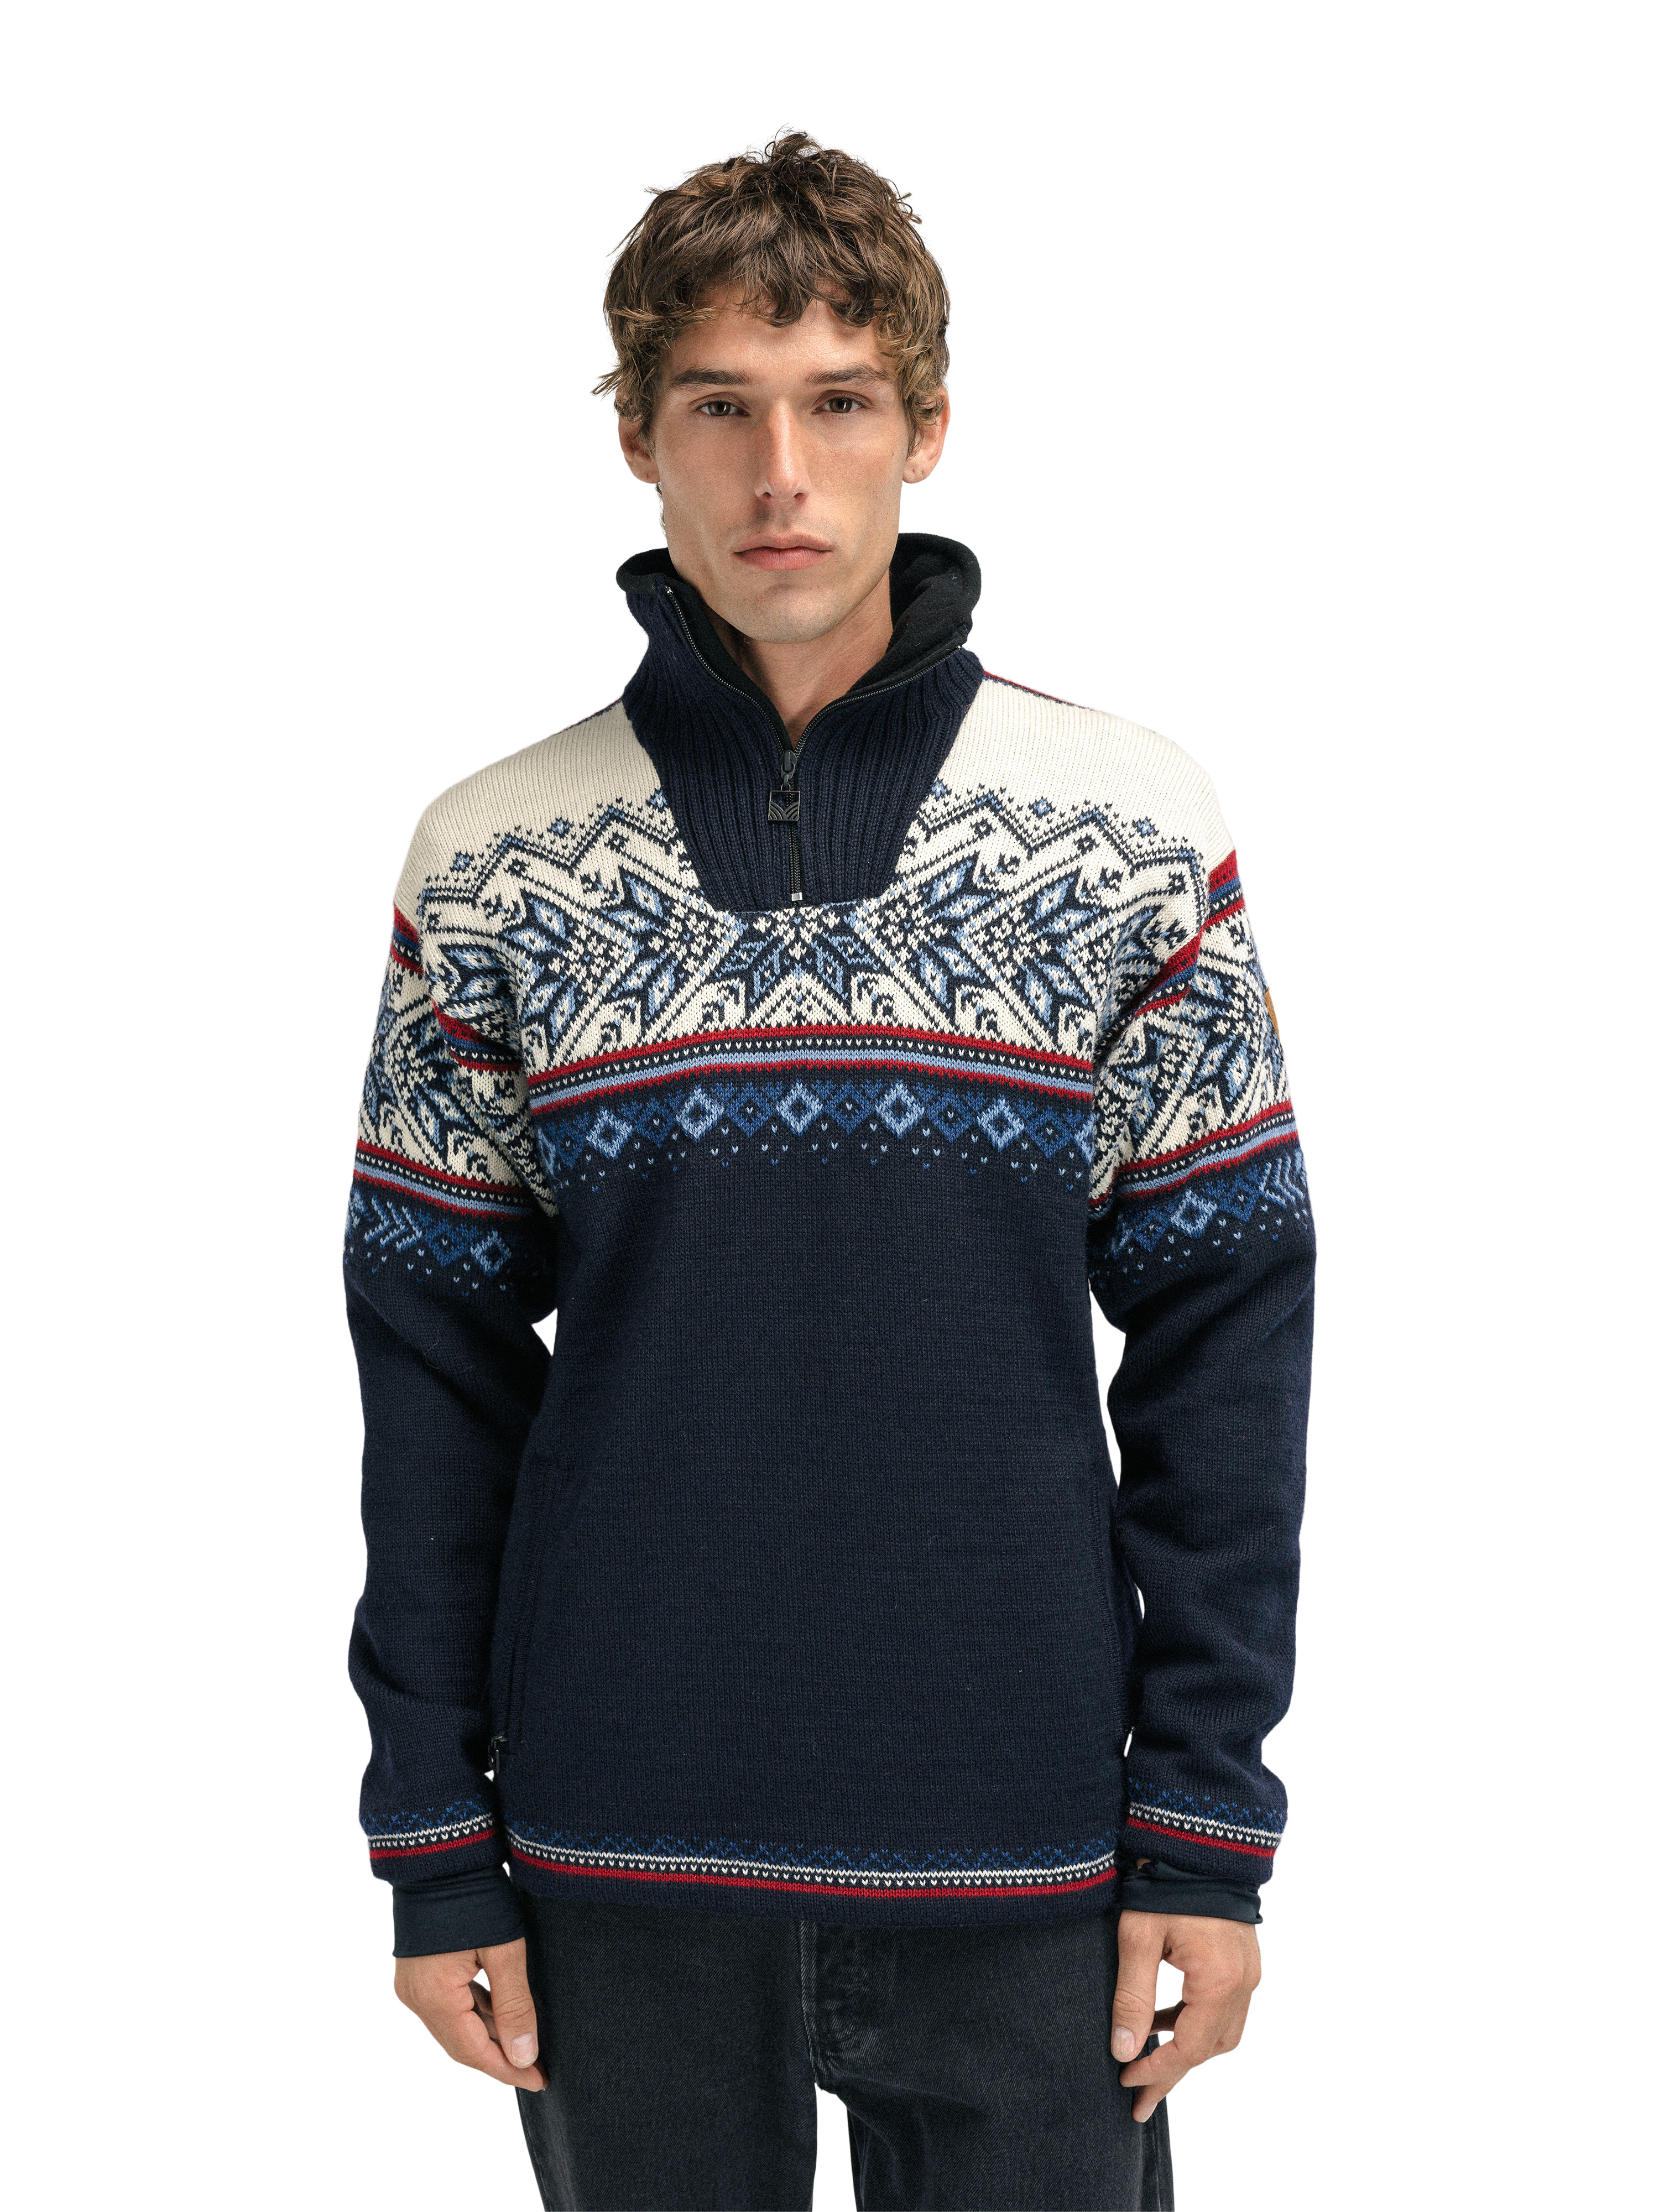 Weatherproof knitwear for men - Dale of Norway